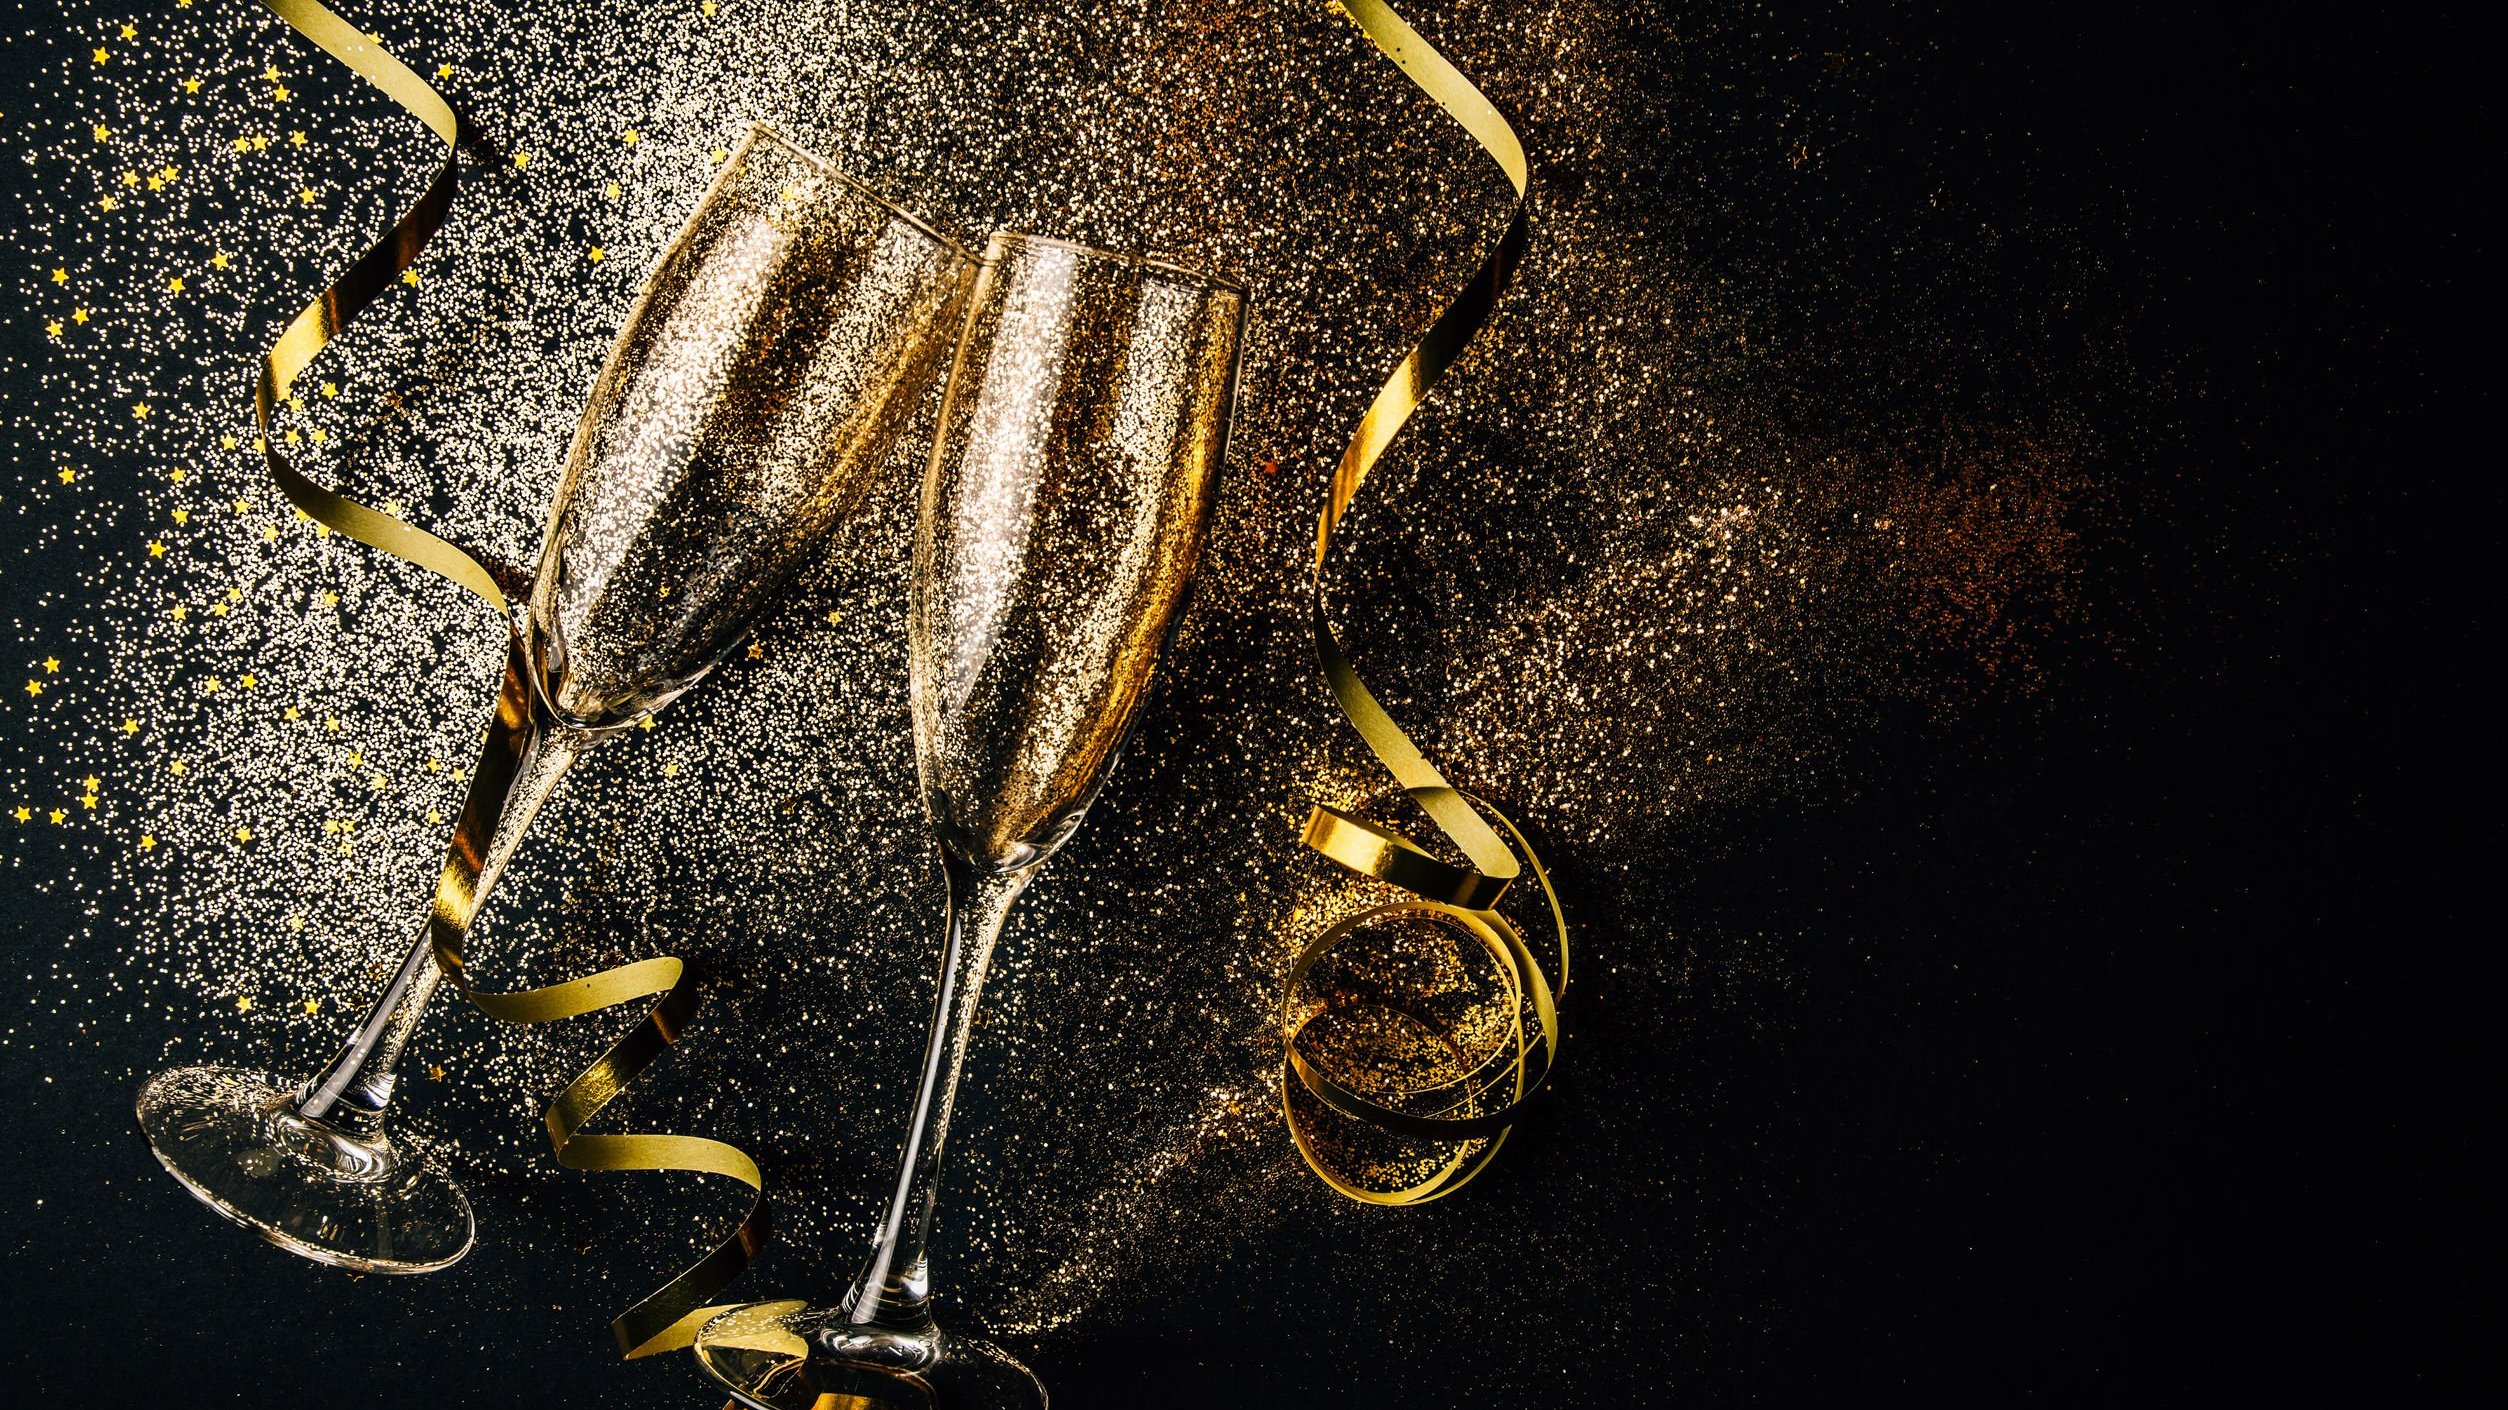 Taças de champanhe brindando em um fundo preto com glitter dourado espalhado e duas fitas douradas em espiral ao lado das taças.